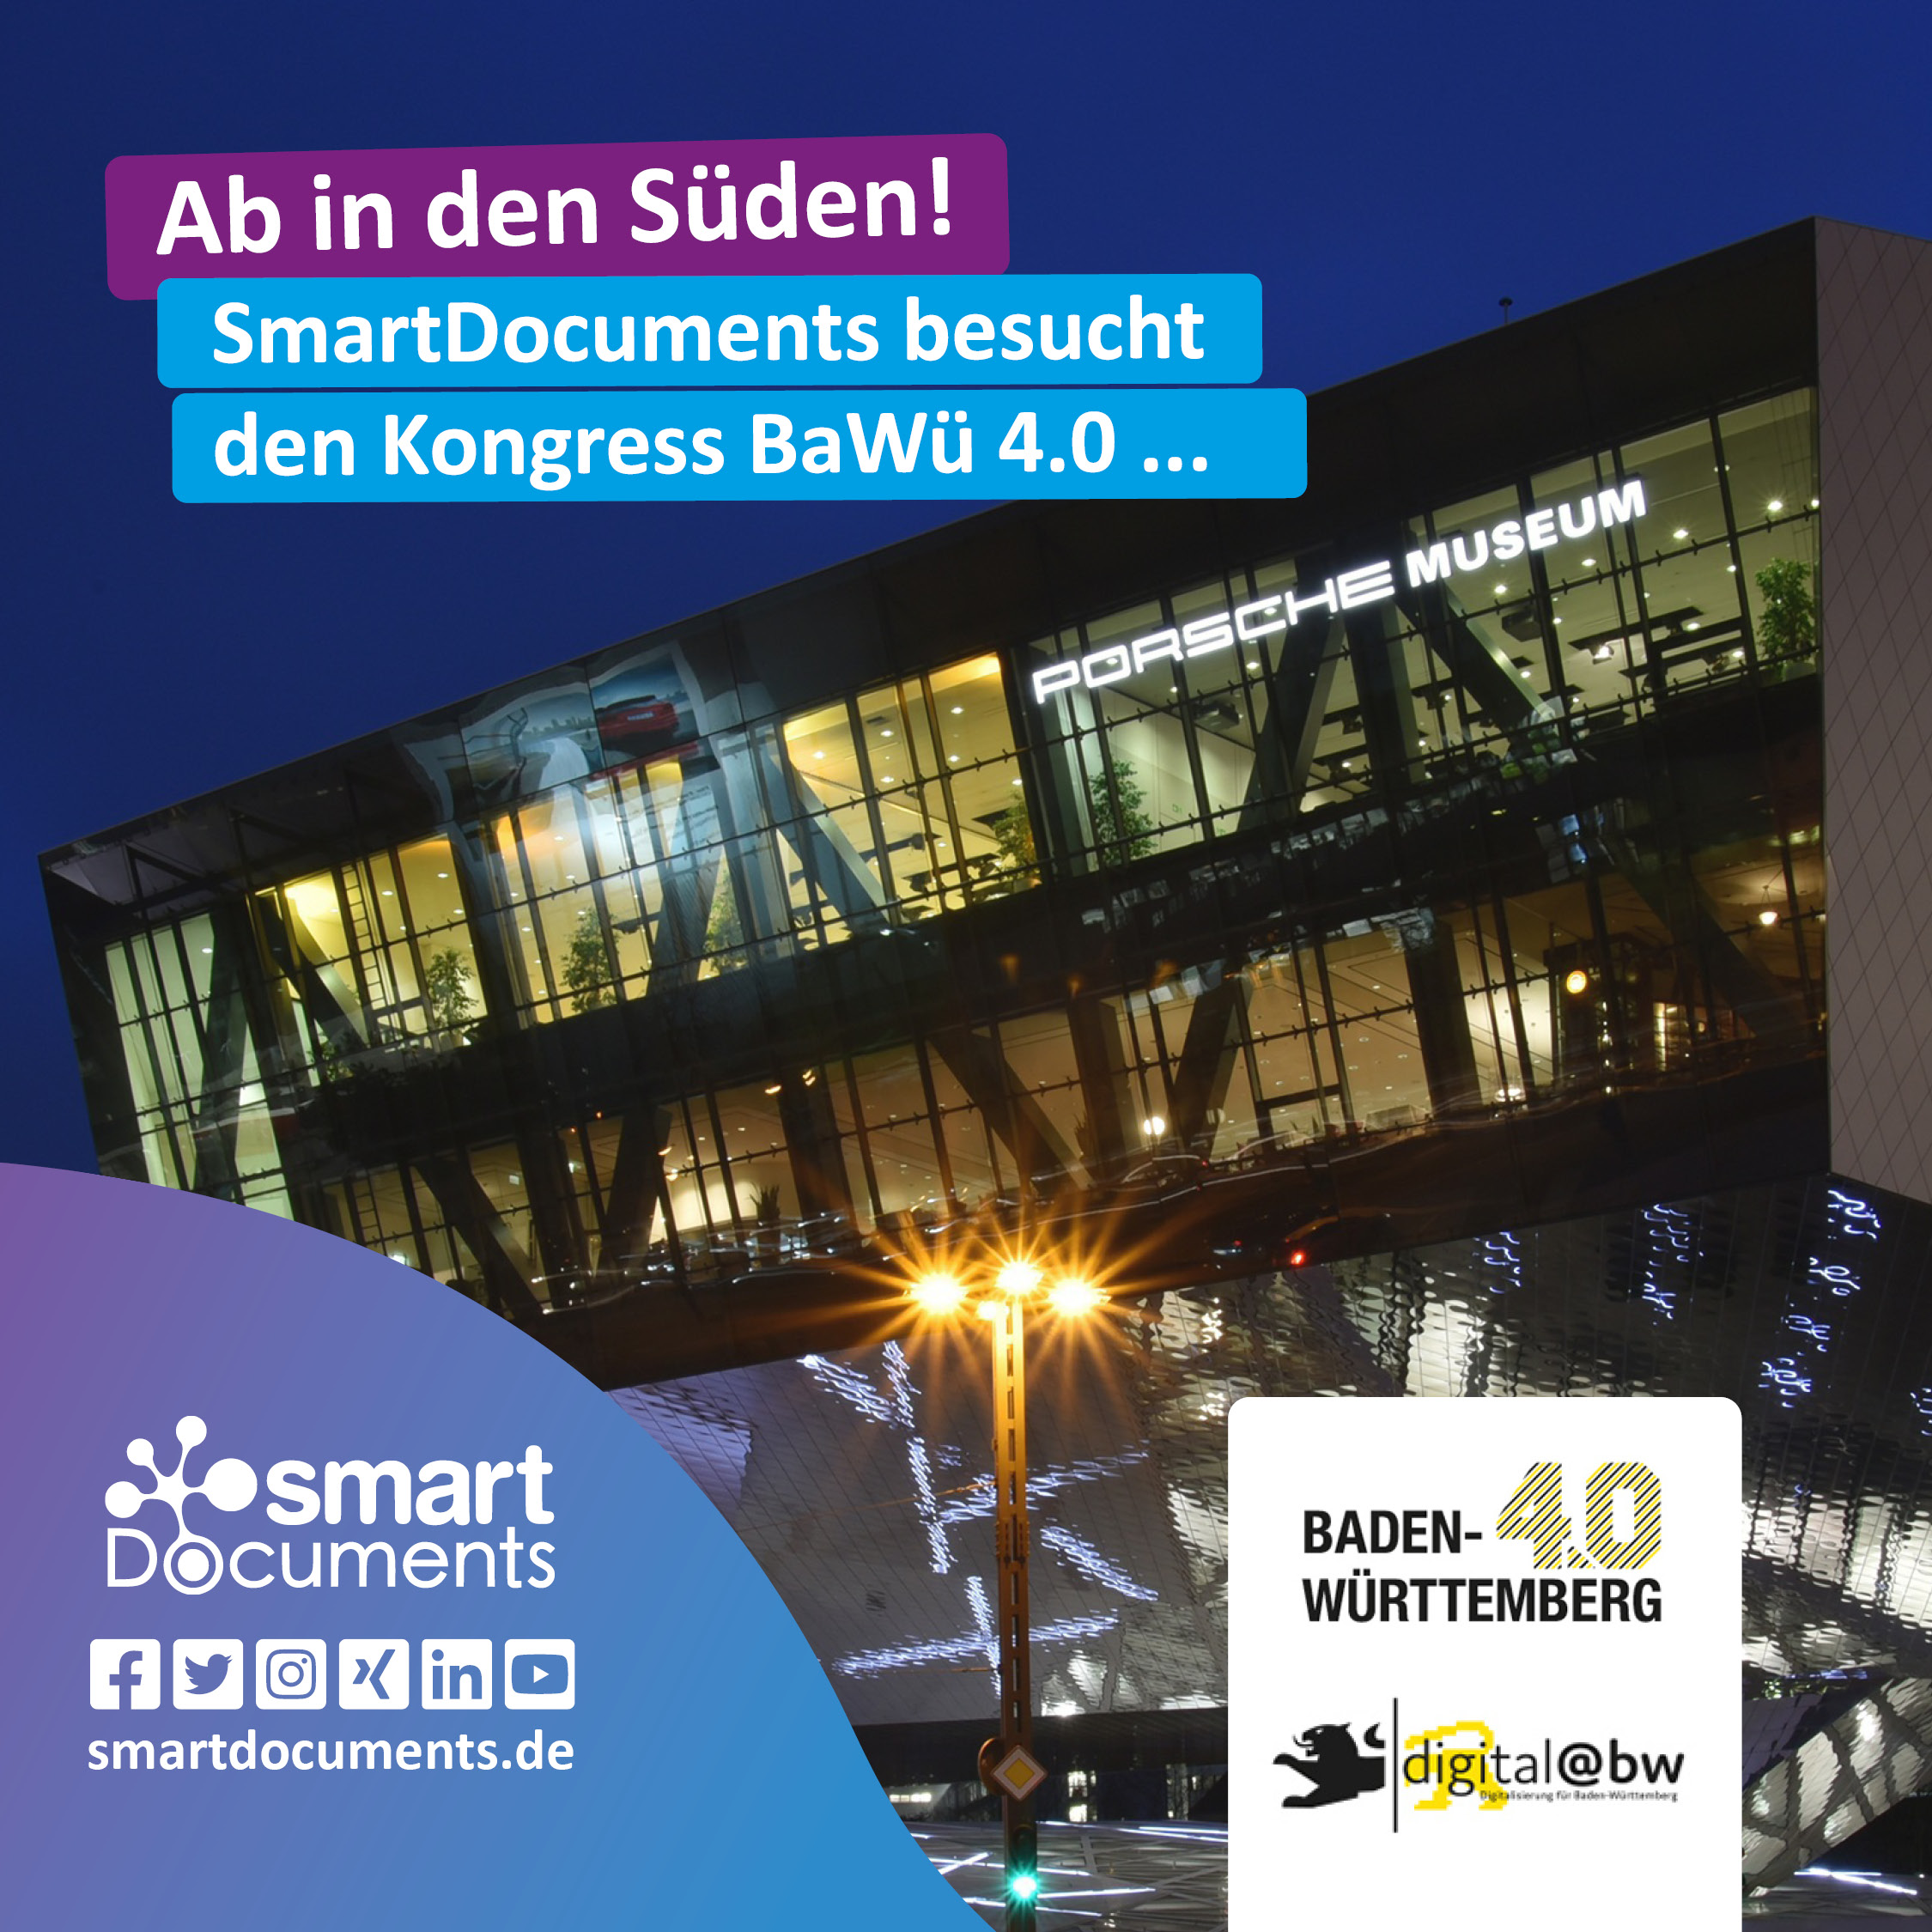 Ab in den Süden! SmartDocuments besucht den Kongress Baden-Württemberg 4.0